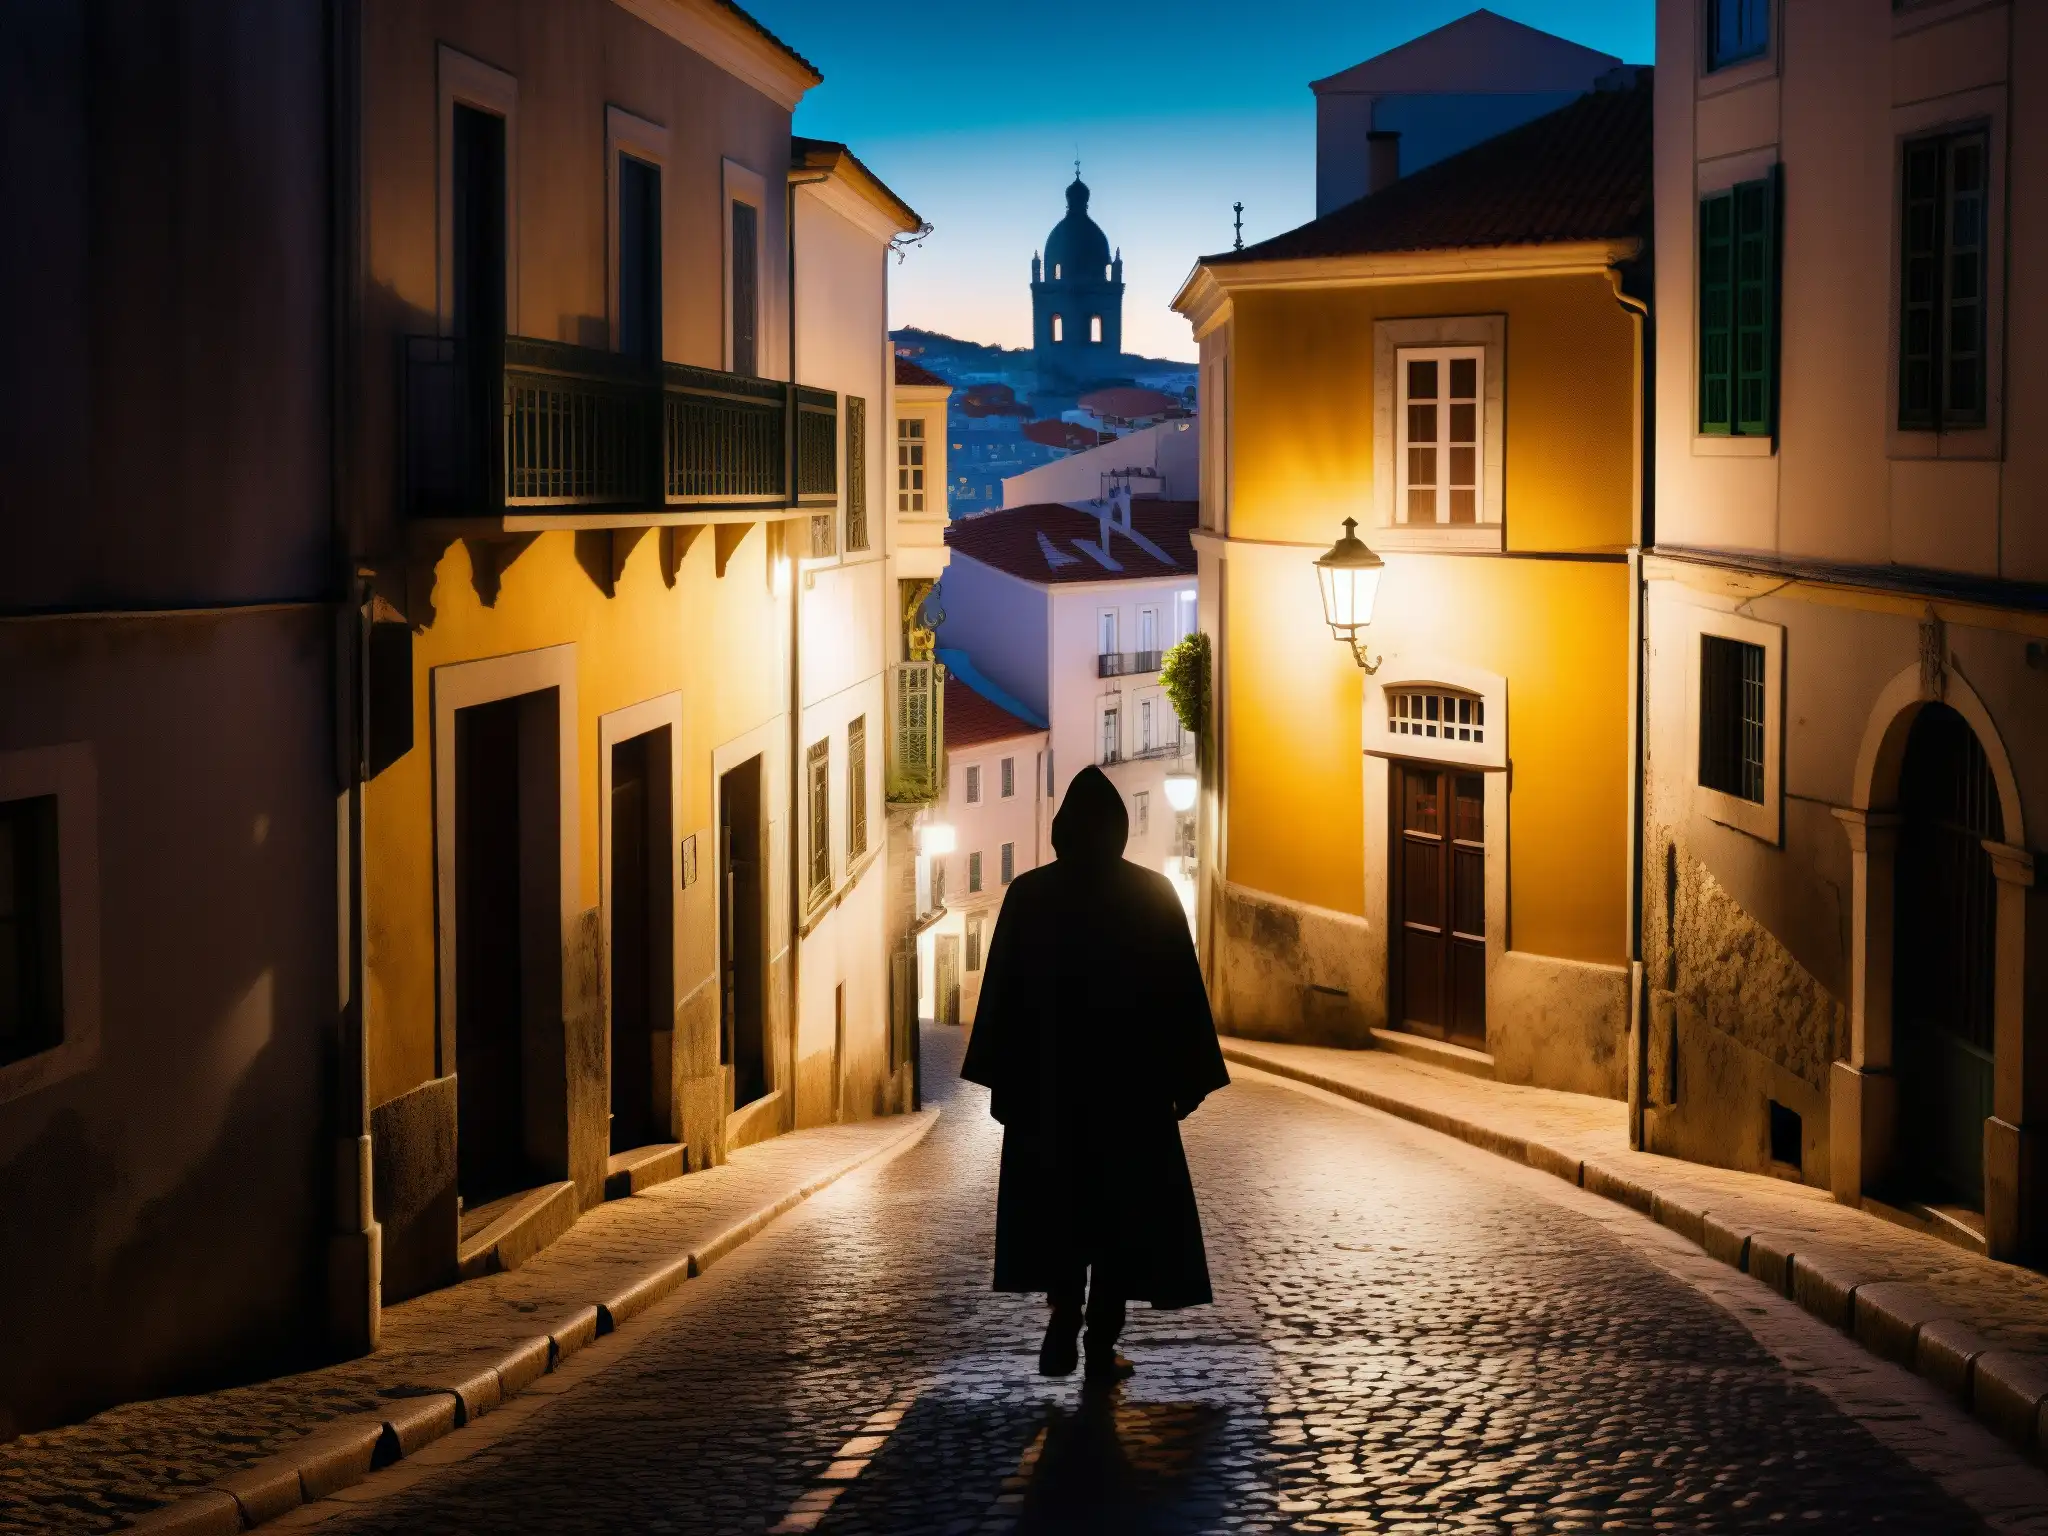 Imagen nocturna de las intrincadas calles de Lisboa, con un aura de misterio y la silueta de una figura encapuchada